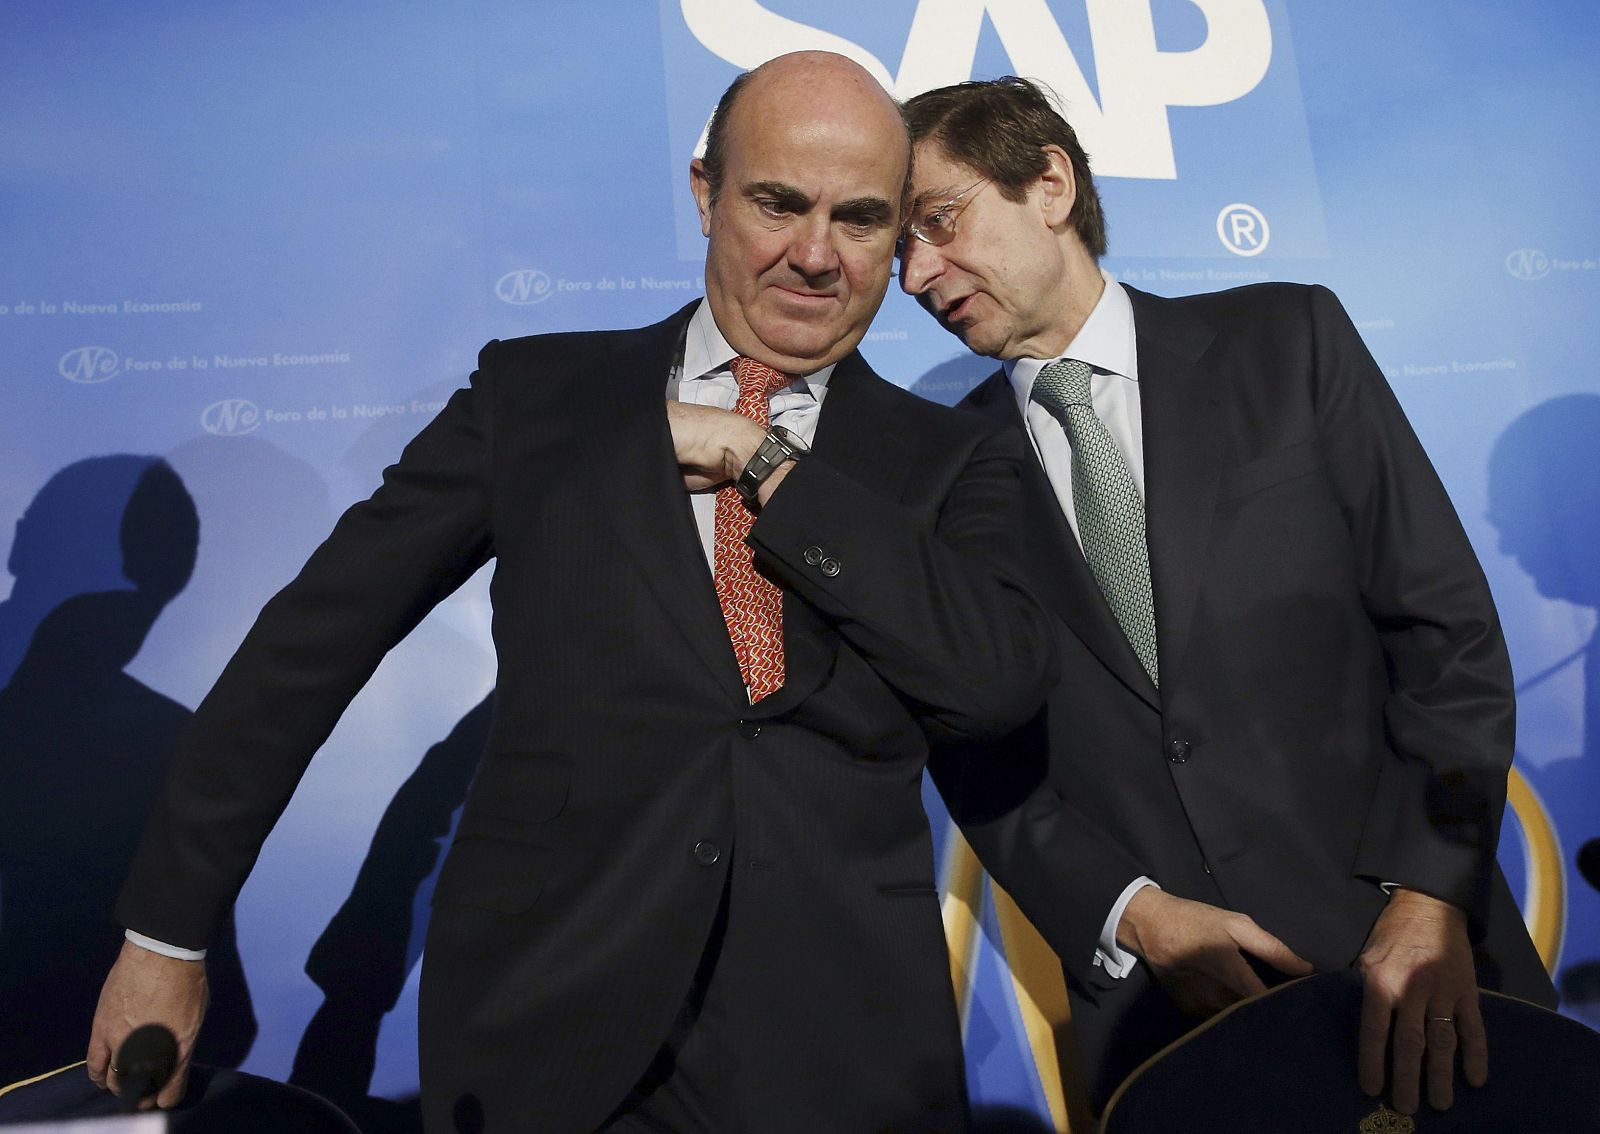 El ministro de Economía, Luis de Guindos, y el presidente de Bankia, José Ignacio Goirigolzarri